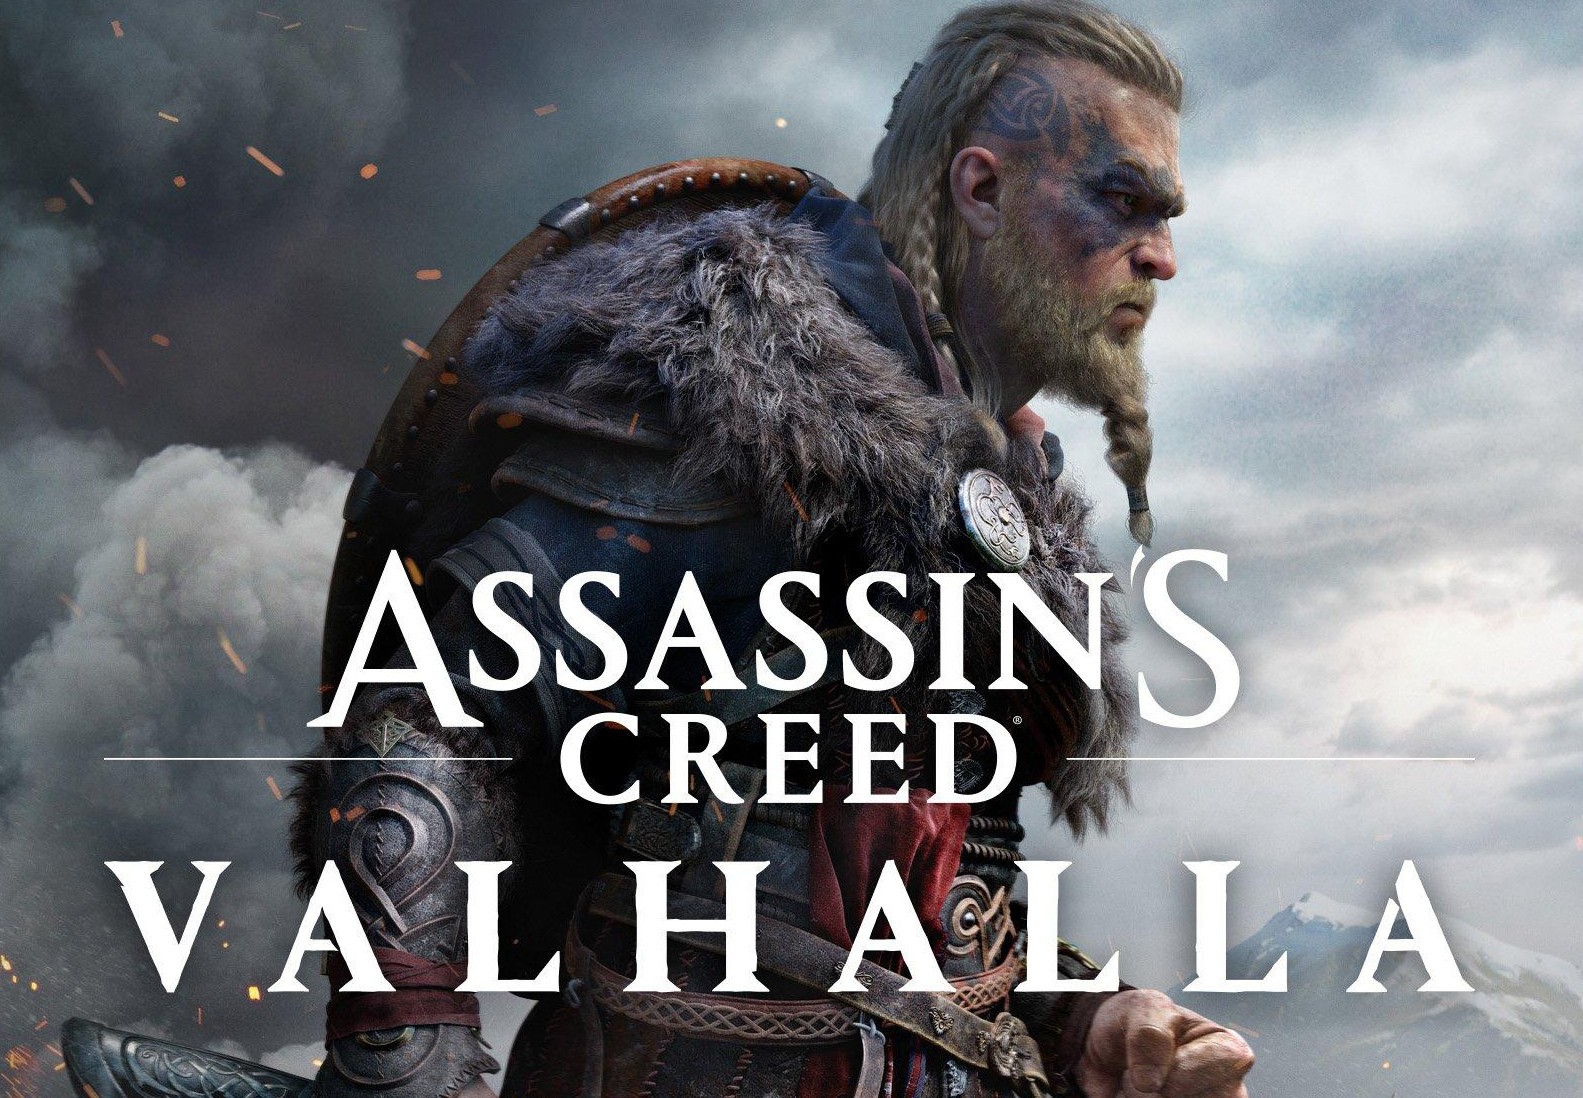 Assassin's Creed Valhalla EU Uplay CD Key